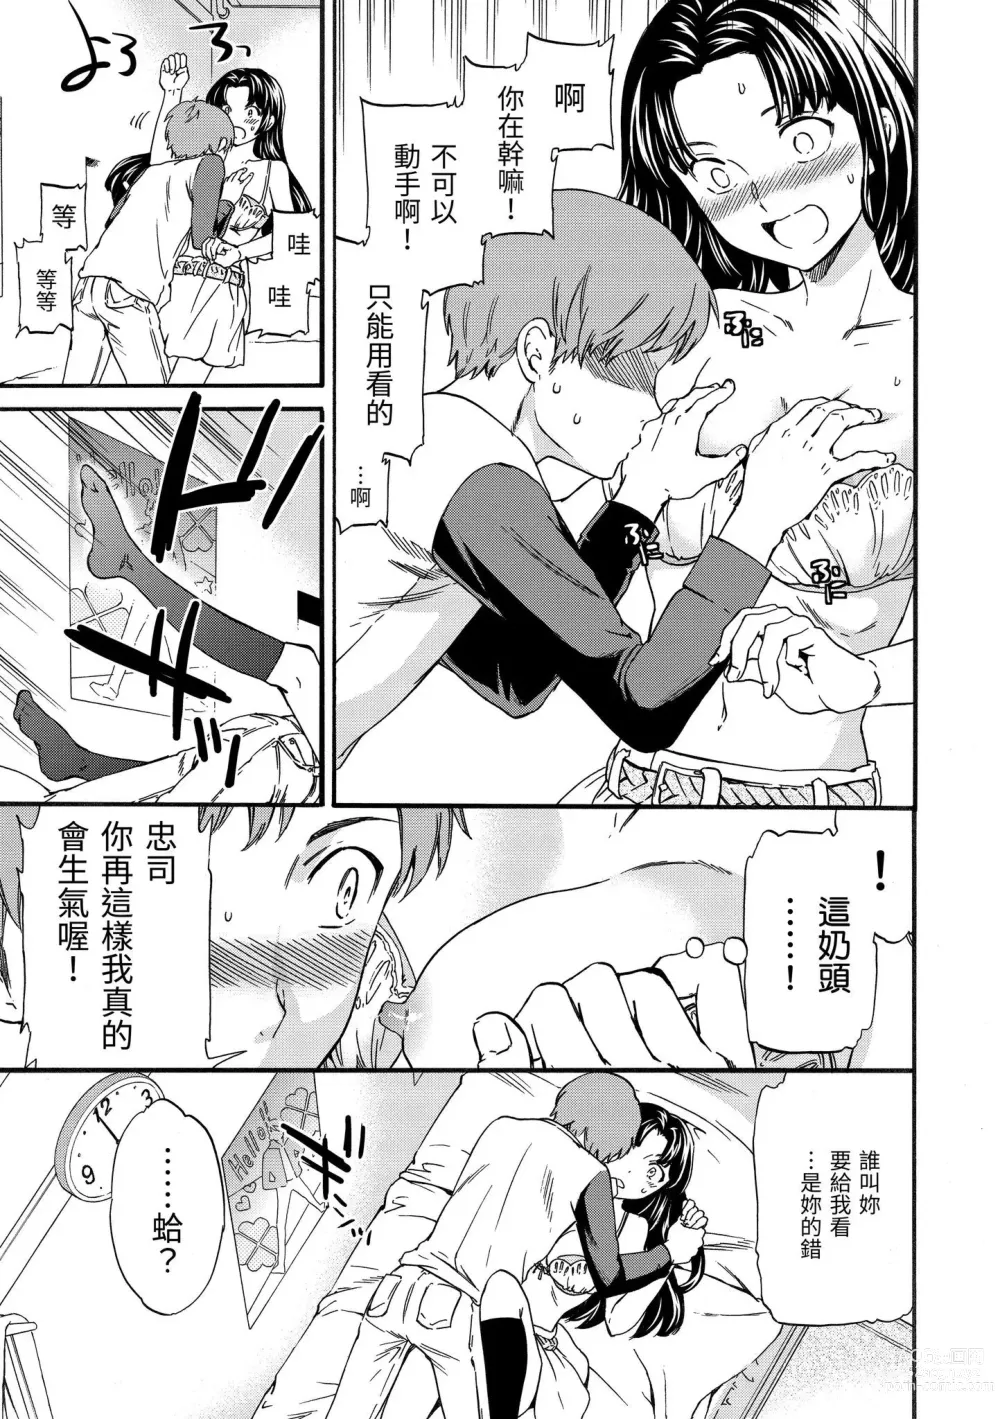 Page 204 of manga 柔情泥濘